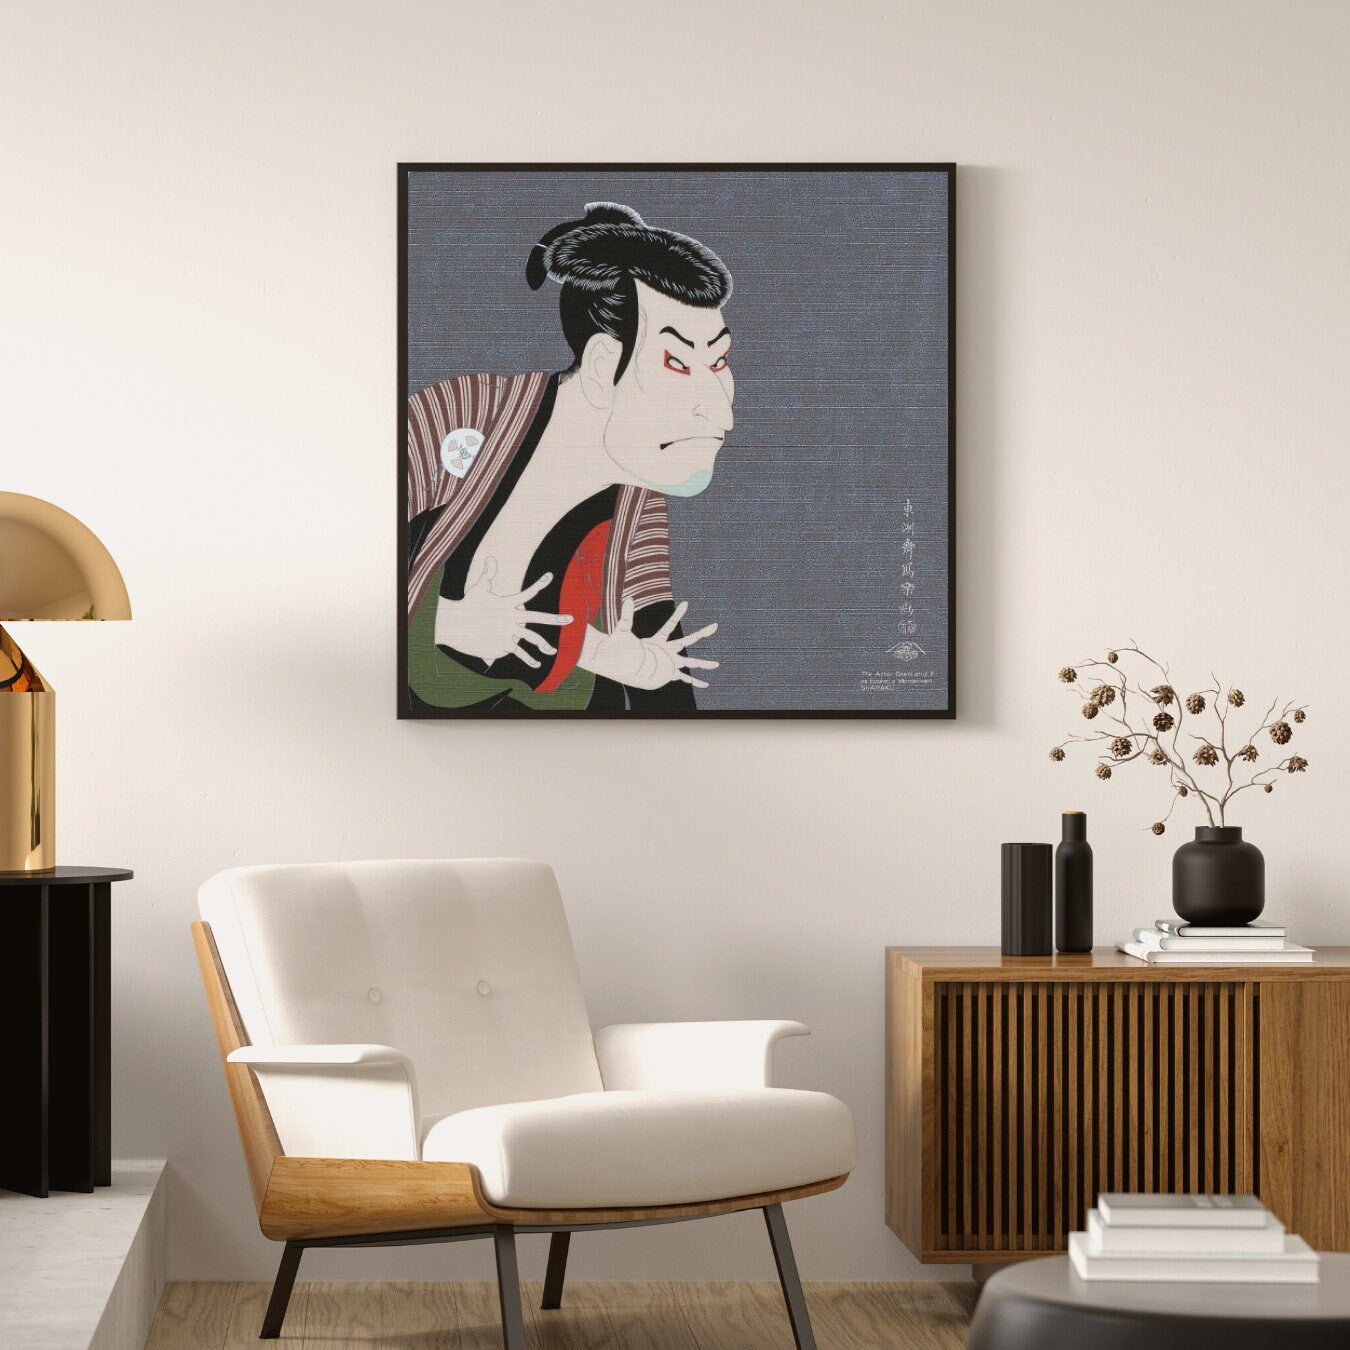 Sharaku, Japanese Art Furoshiki, 50 x 50cm